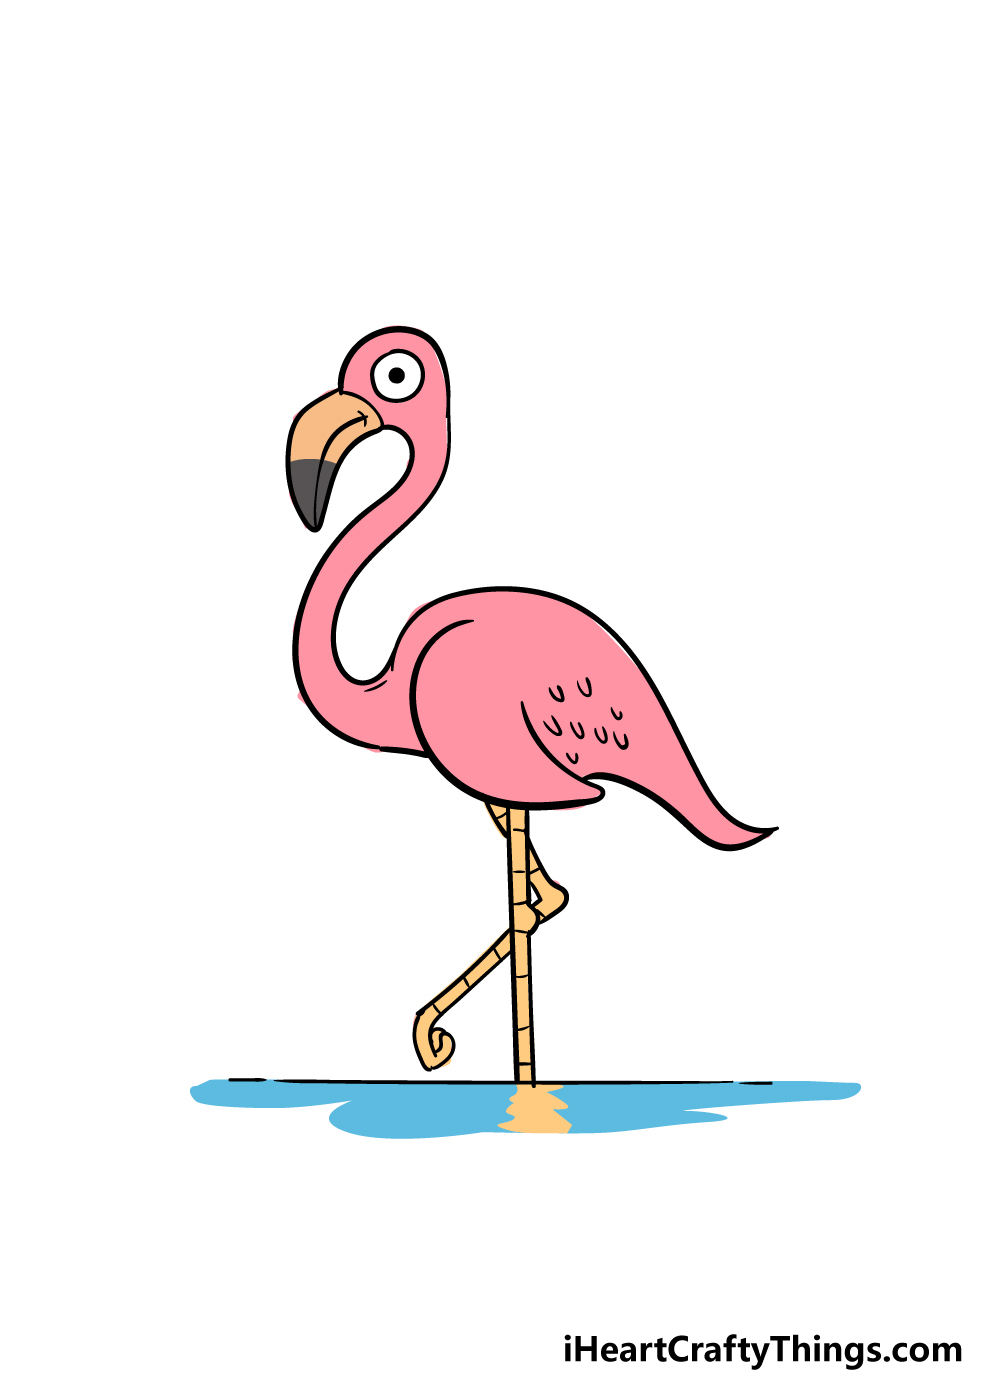 9 3 - Hướng dẫn cách vẽ chim hồng hạc đơn giản với 9 bước cơ bản